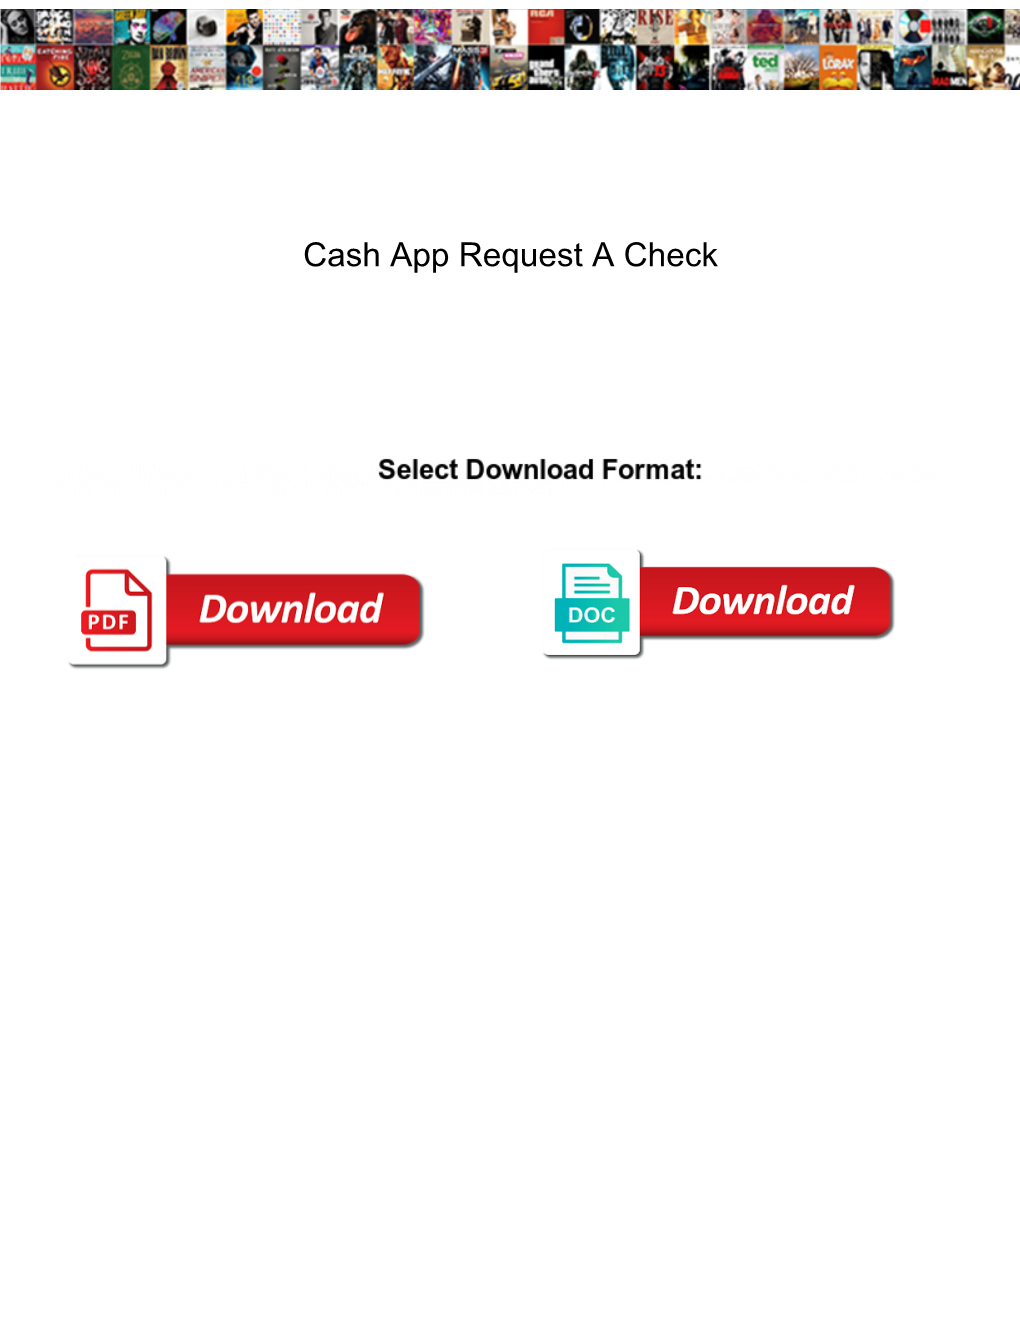 Cash App Request a Check